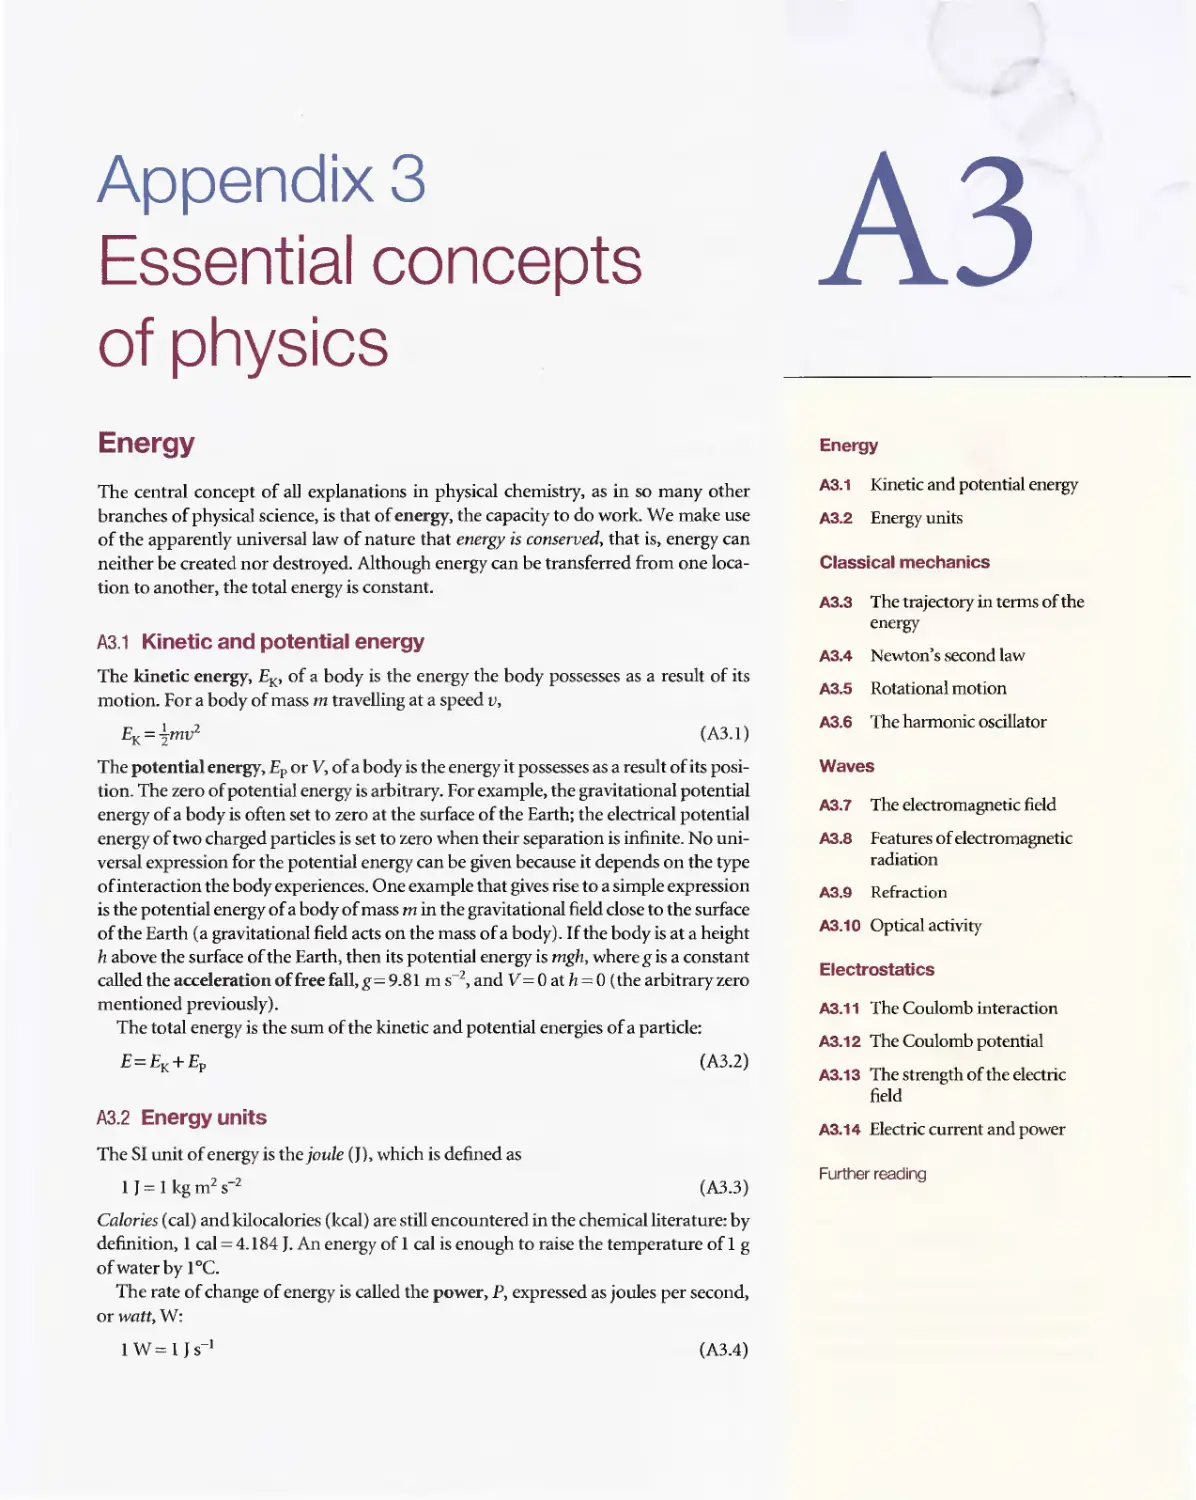 Appendix 3 - Essential concepts of physics